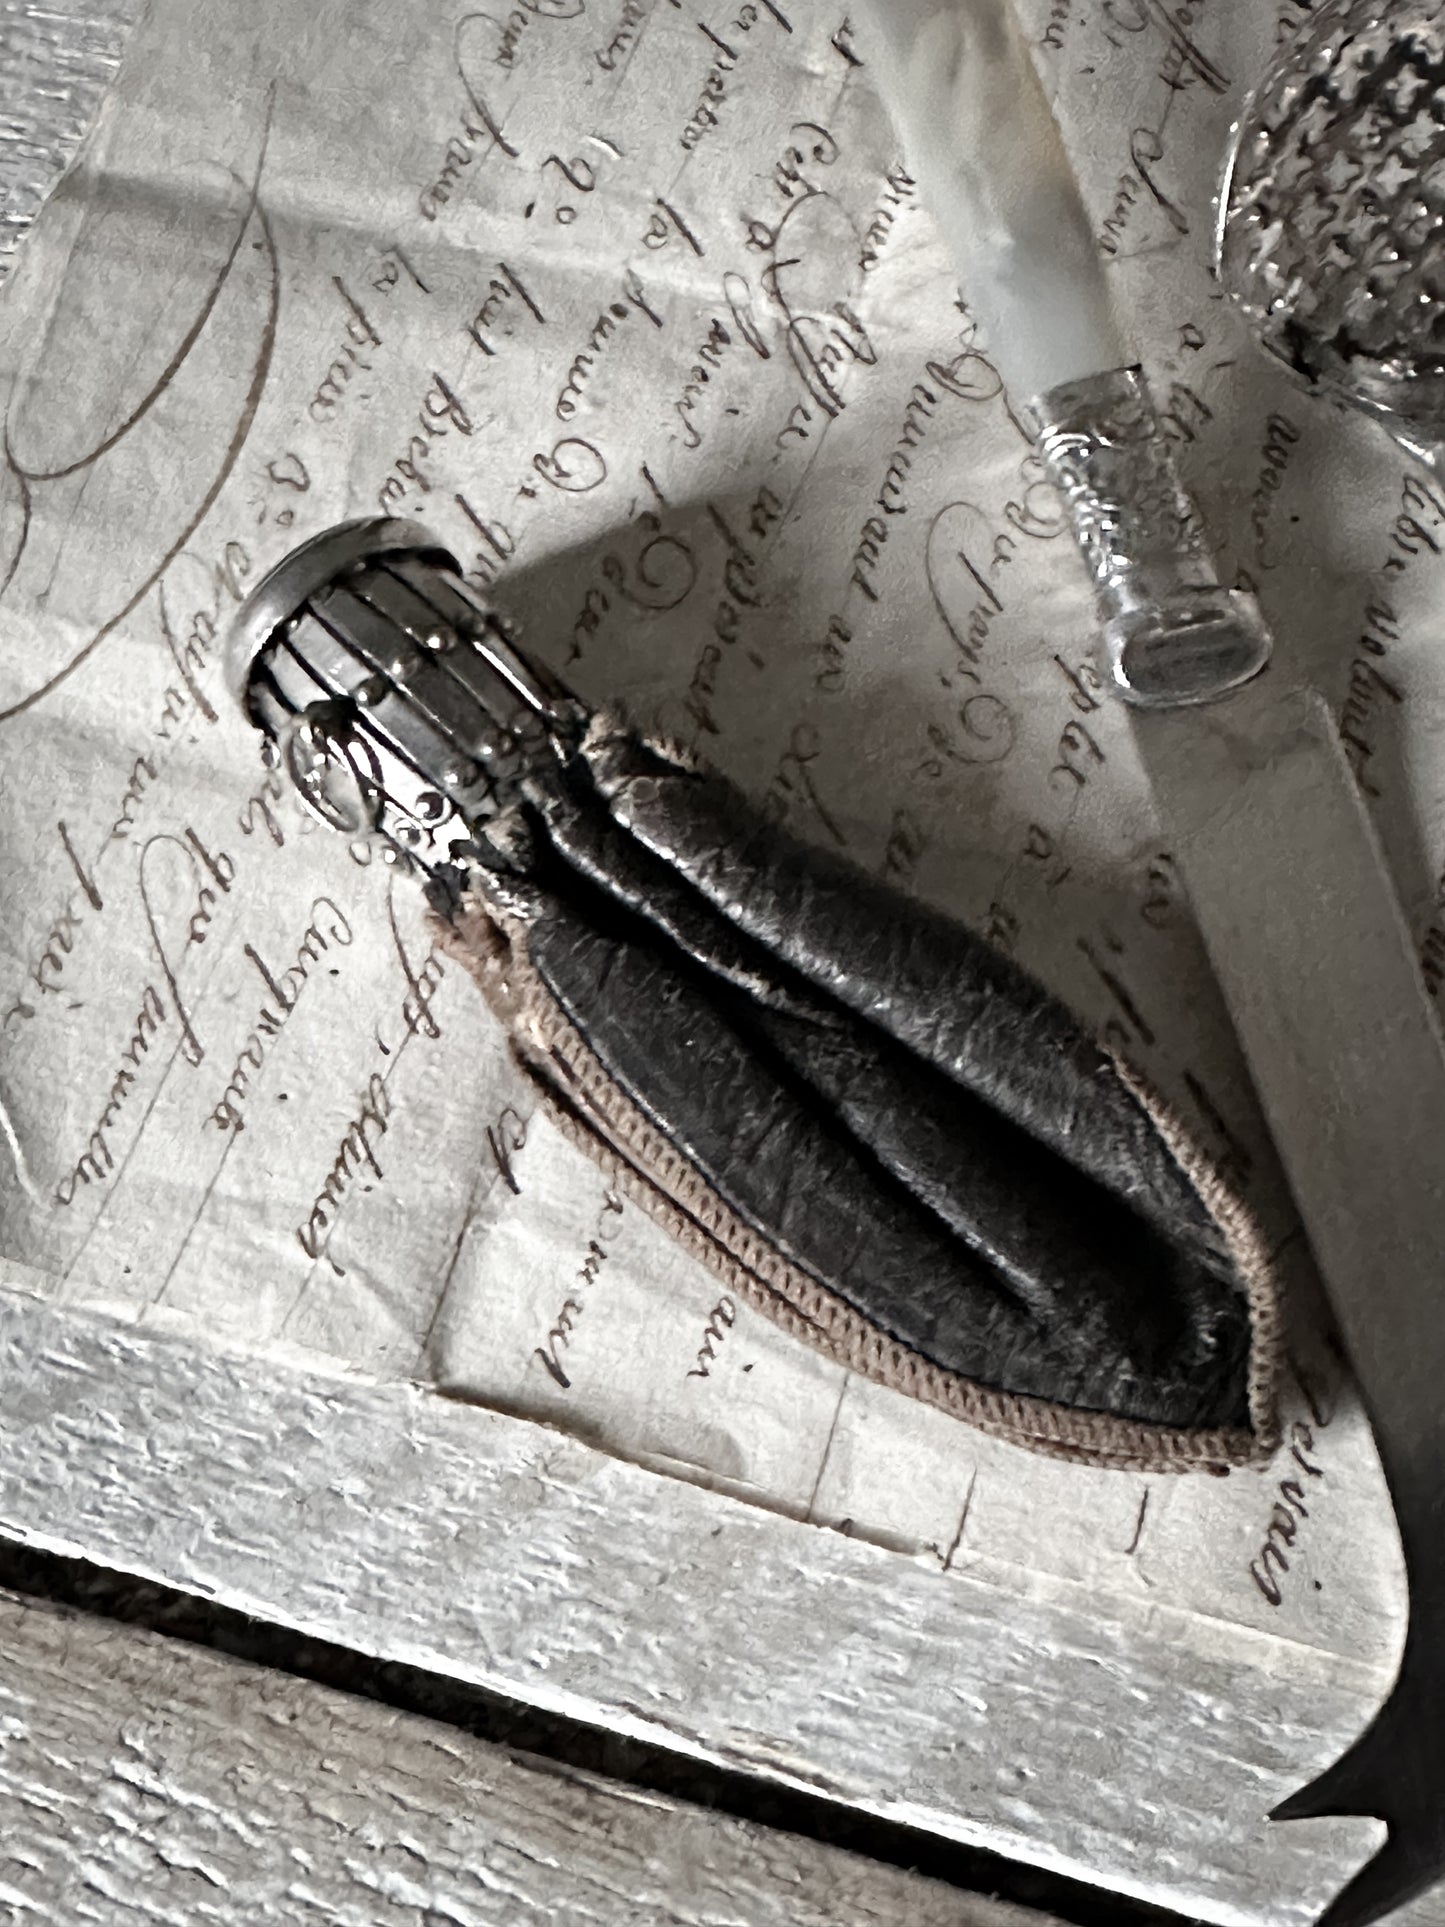 A fabulous antique leather miser’s purse